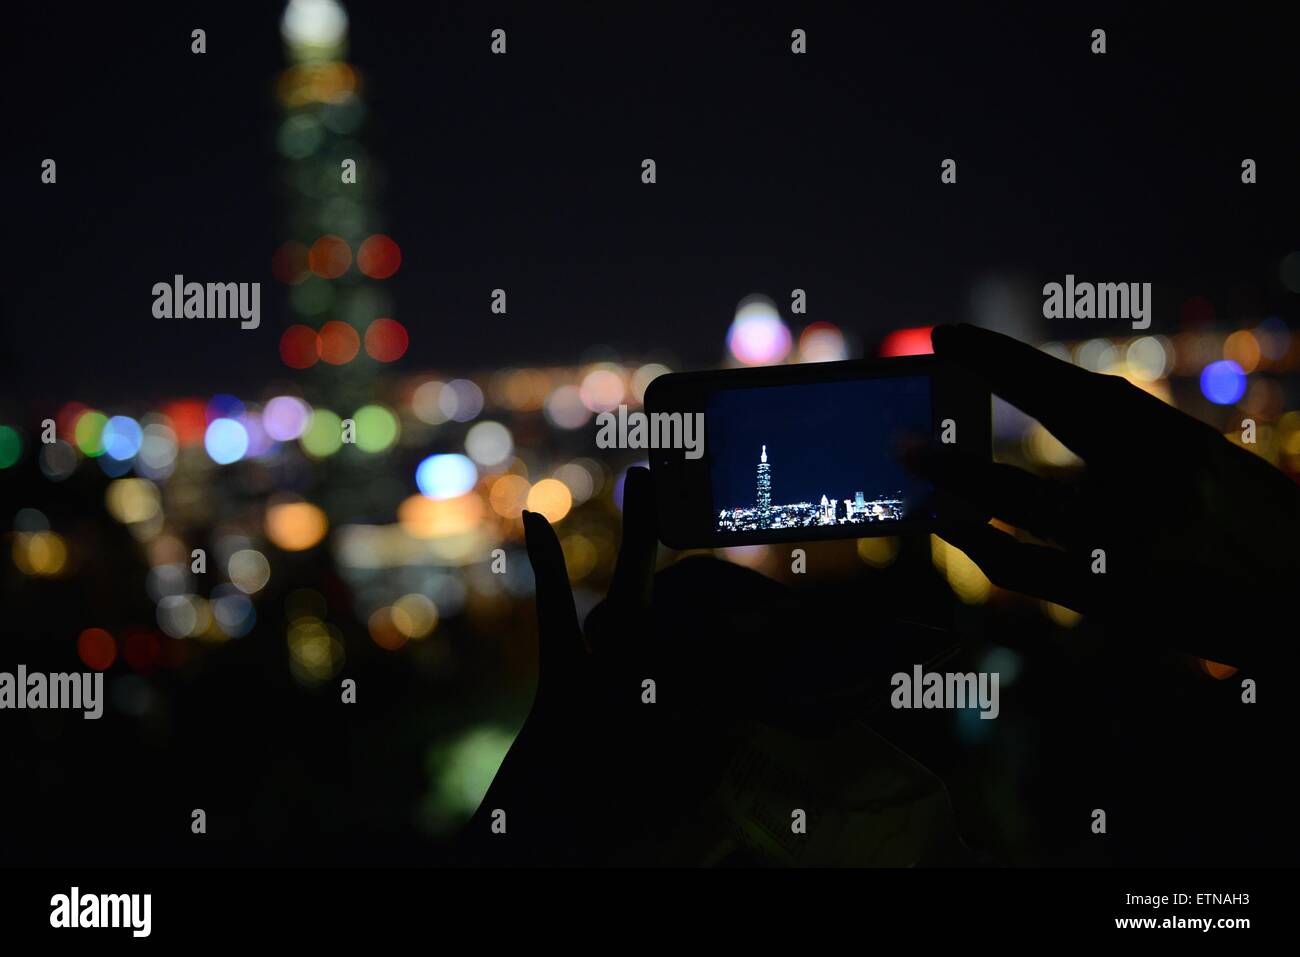 Silhouette einer Person, die ein Mobilgerät hält und ein Foto von Taipei, Taiwan, macht Stockfoto